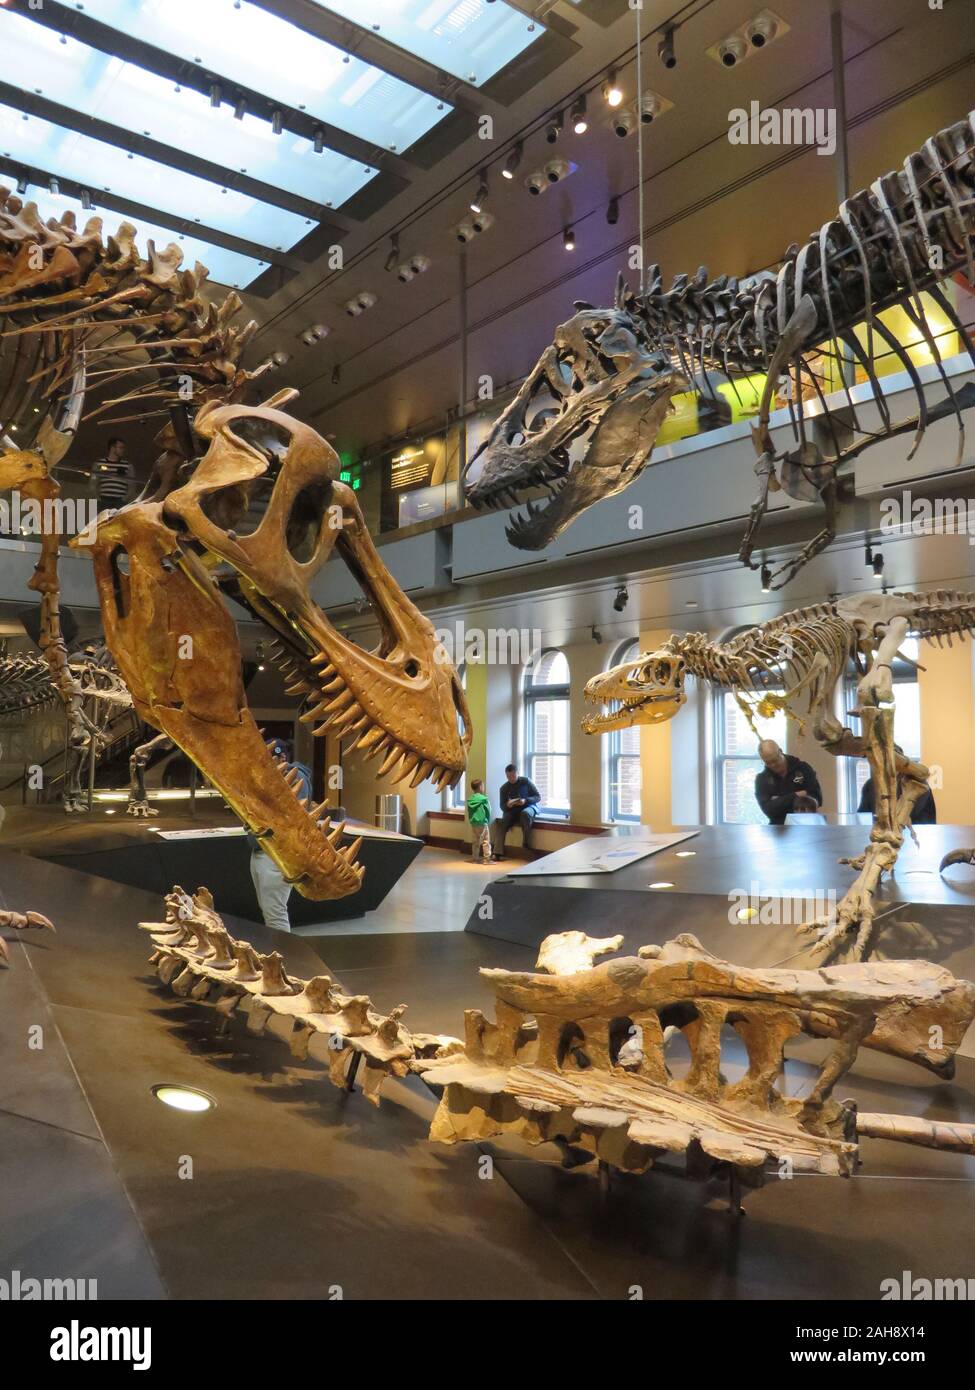 Squelettes de dinosaures exposés au Musée d'histoire naturelle du comté de Los Angeles Banque D'Images